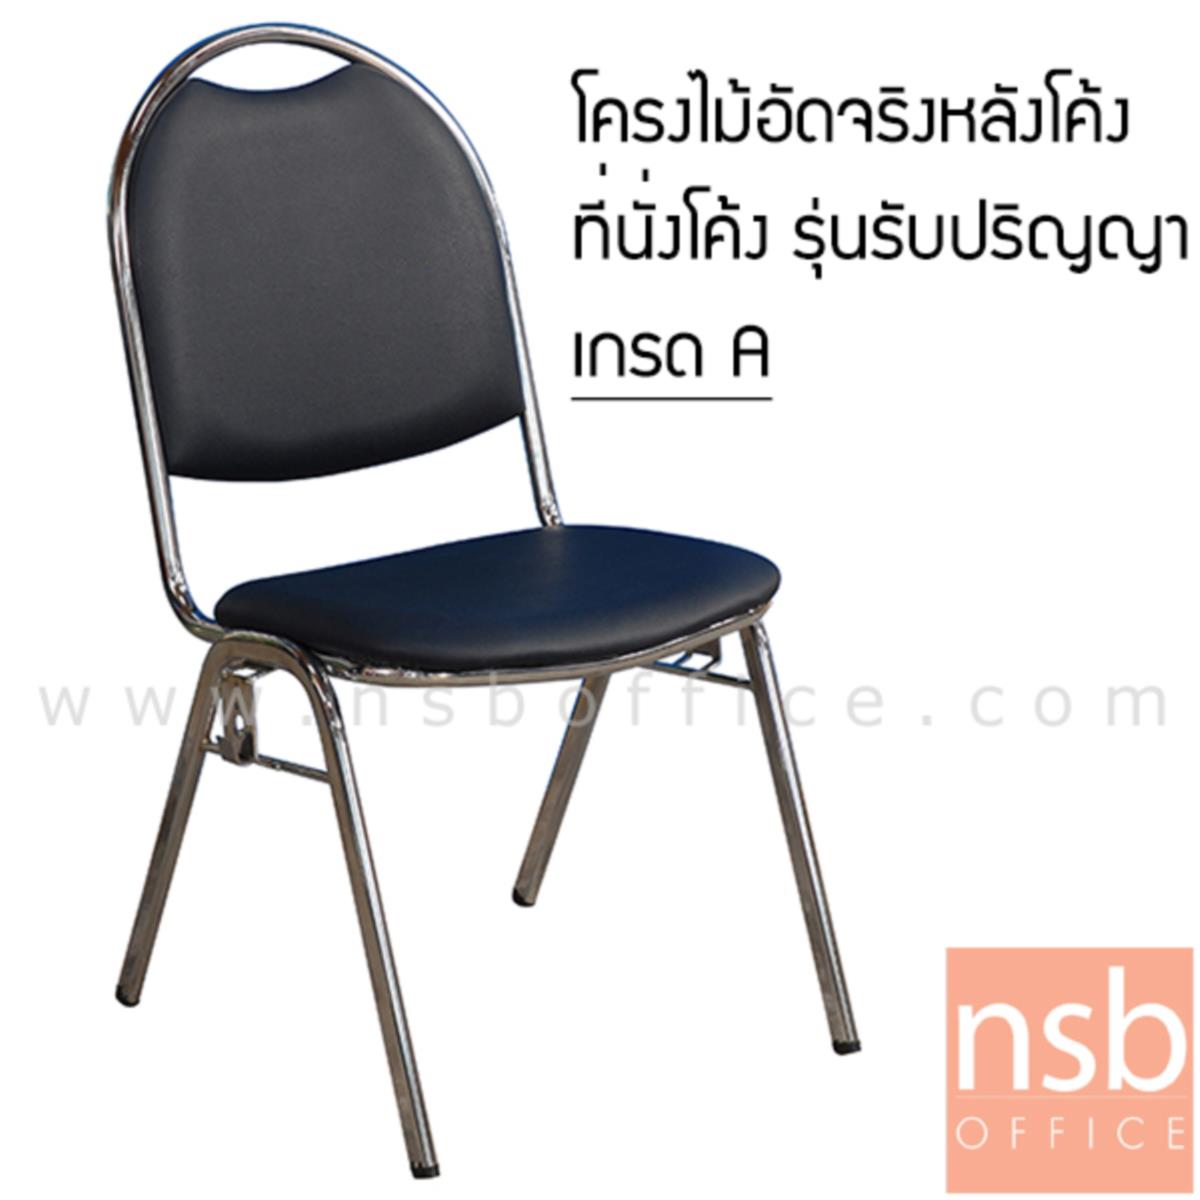 B05A003:เก้าอี้รับปริญญา รุ่น CM-013 ขาเหล็ก 